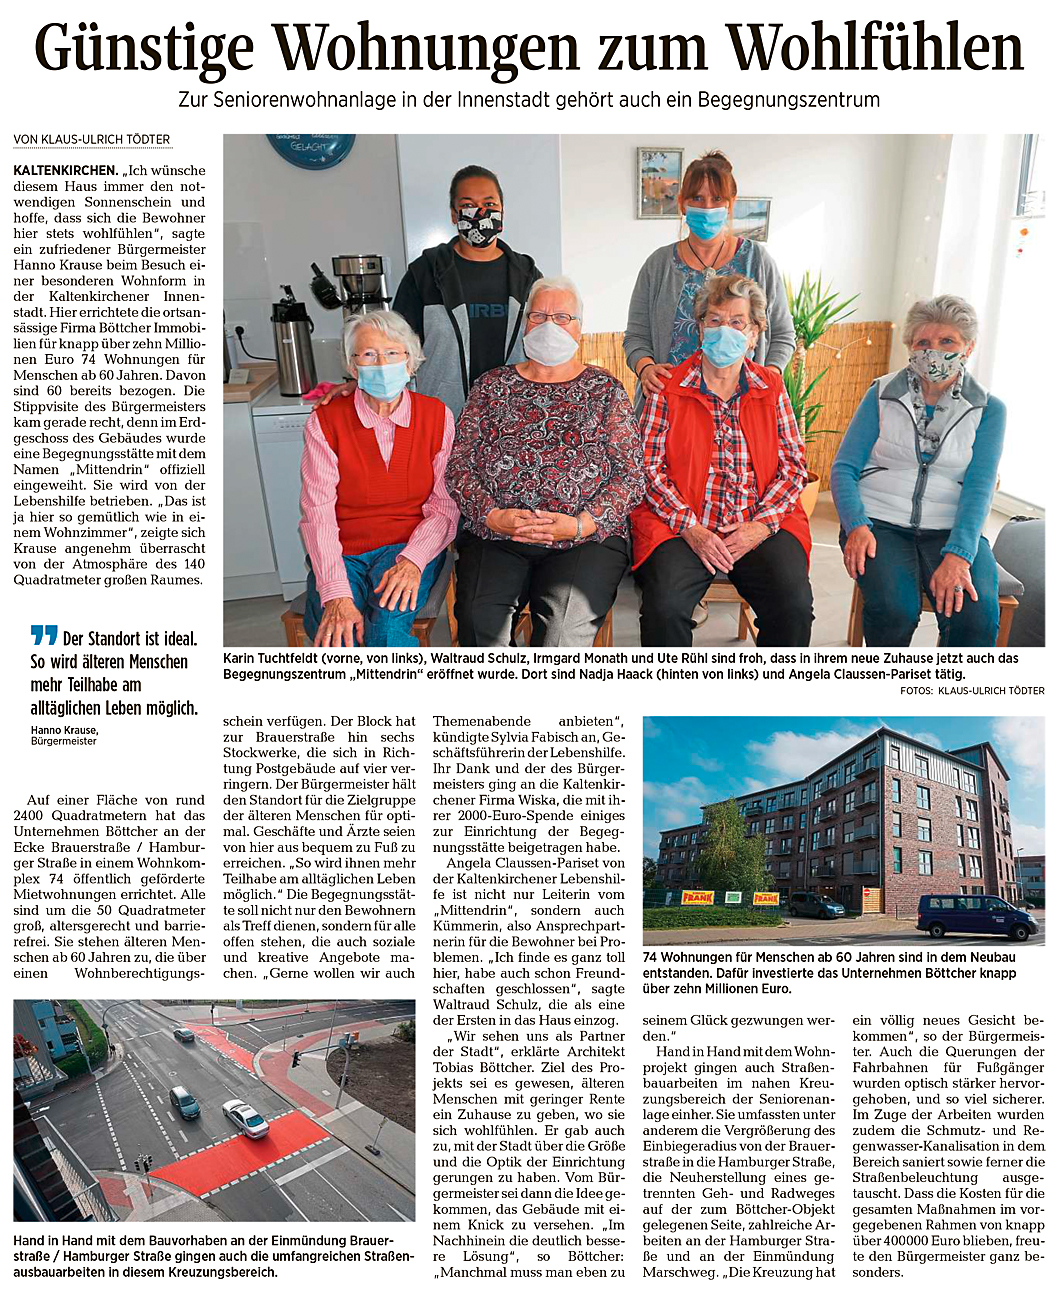 Ein Artikel aus der Segeberger_Zeitung vom 7.10.2020: "Günstige Wohnungen zum Wohlfühlen"